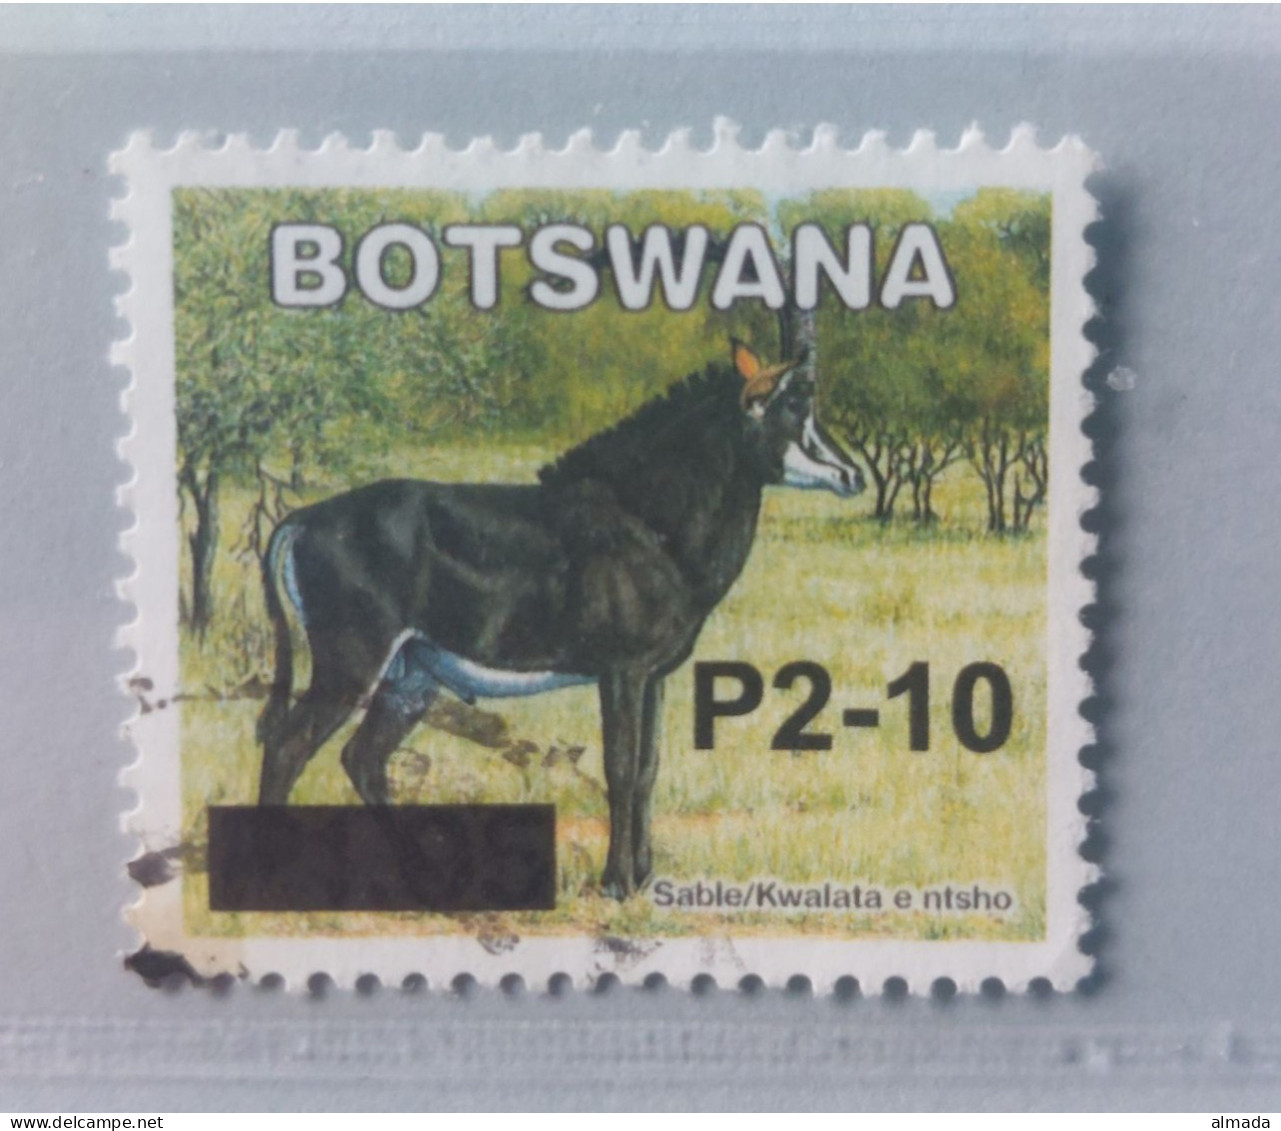 Botswana 2006: Michel 826 Used, Gestempelt - Botswana (1966-...)